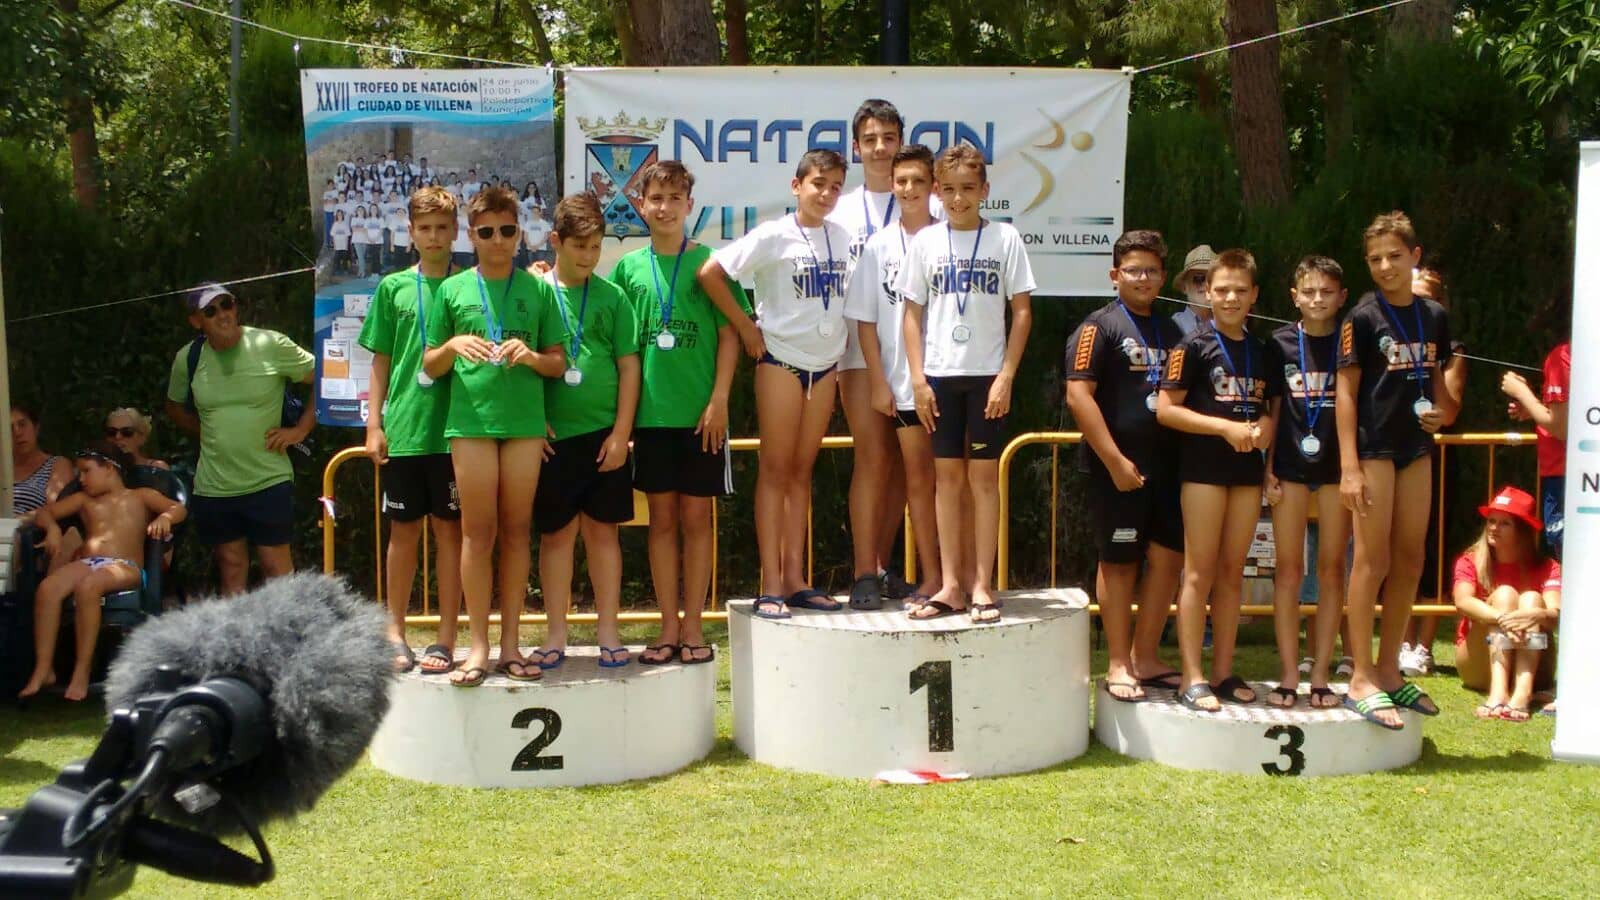 Unos 450 nadadores participan en el XXVII edición del Trofeo de Natación Ciudad de Villena